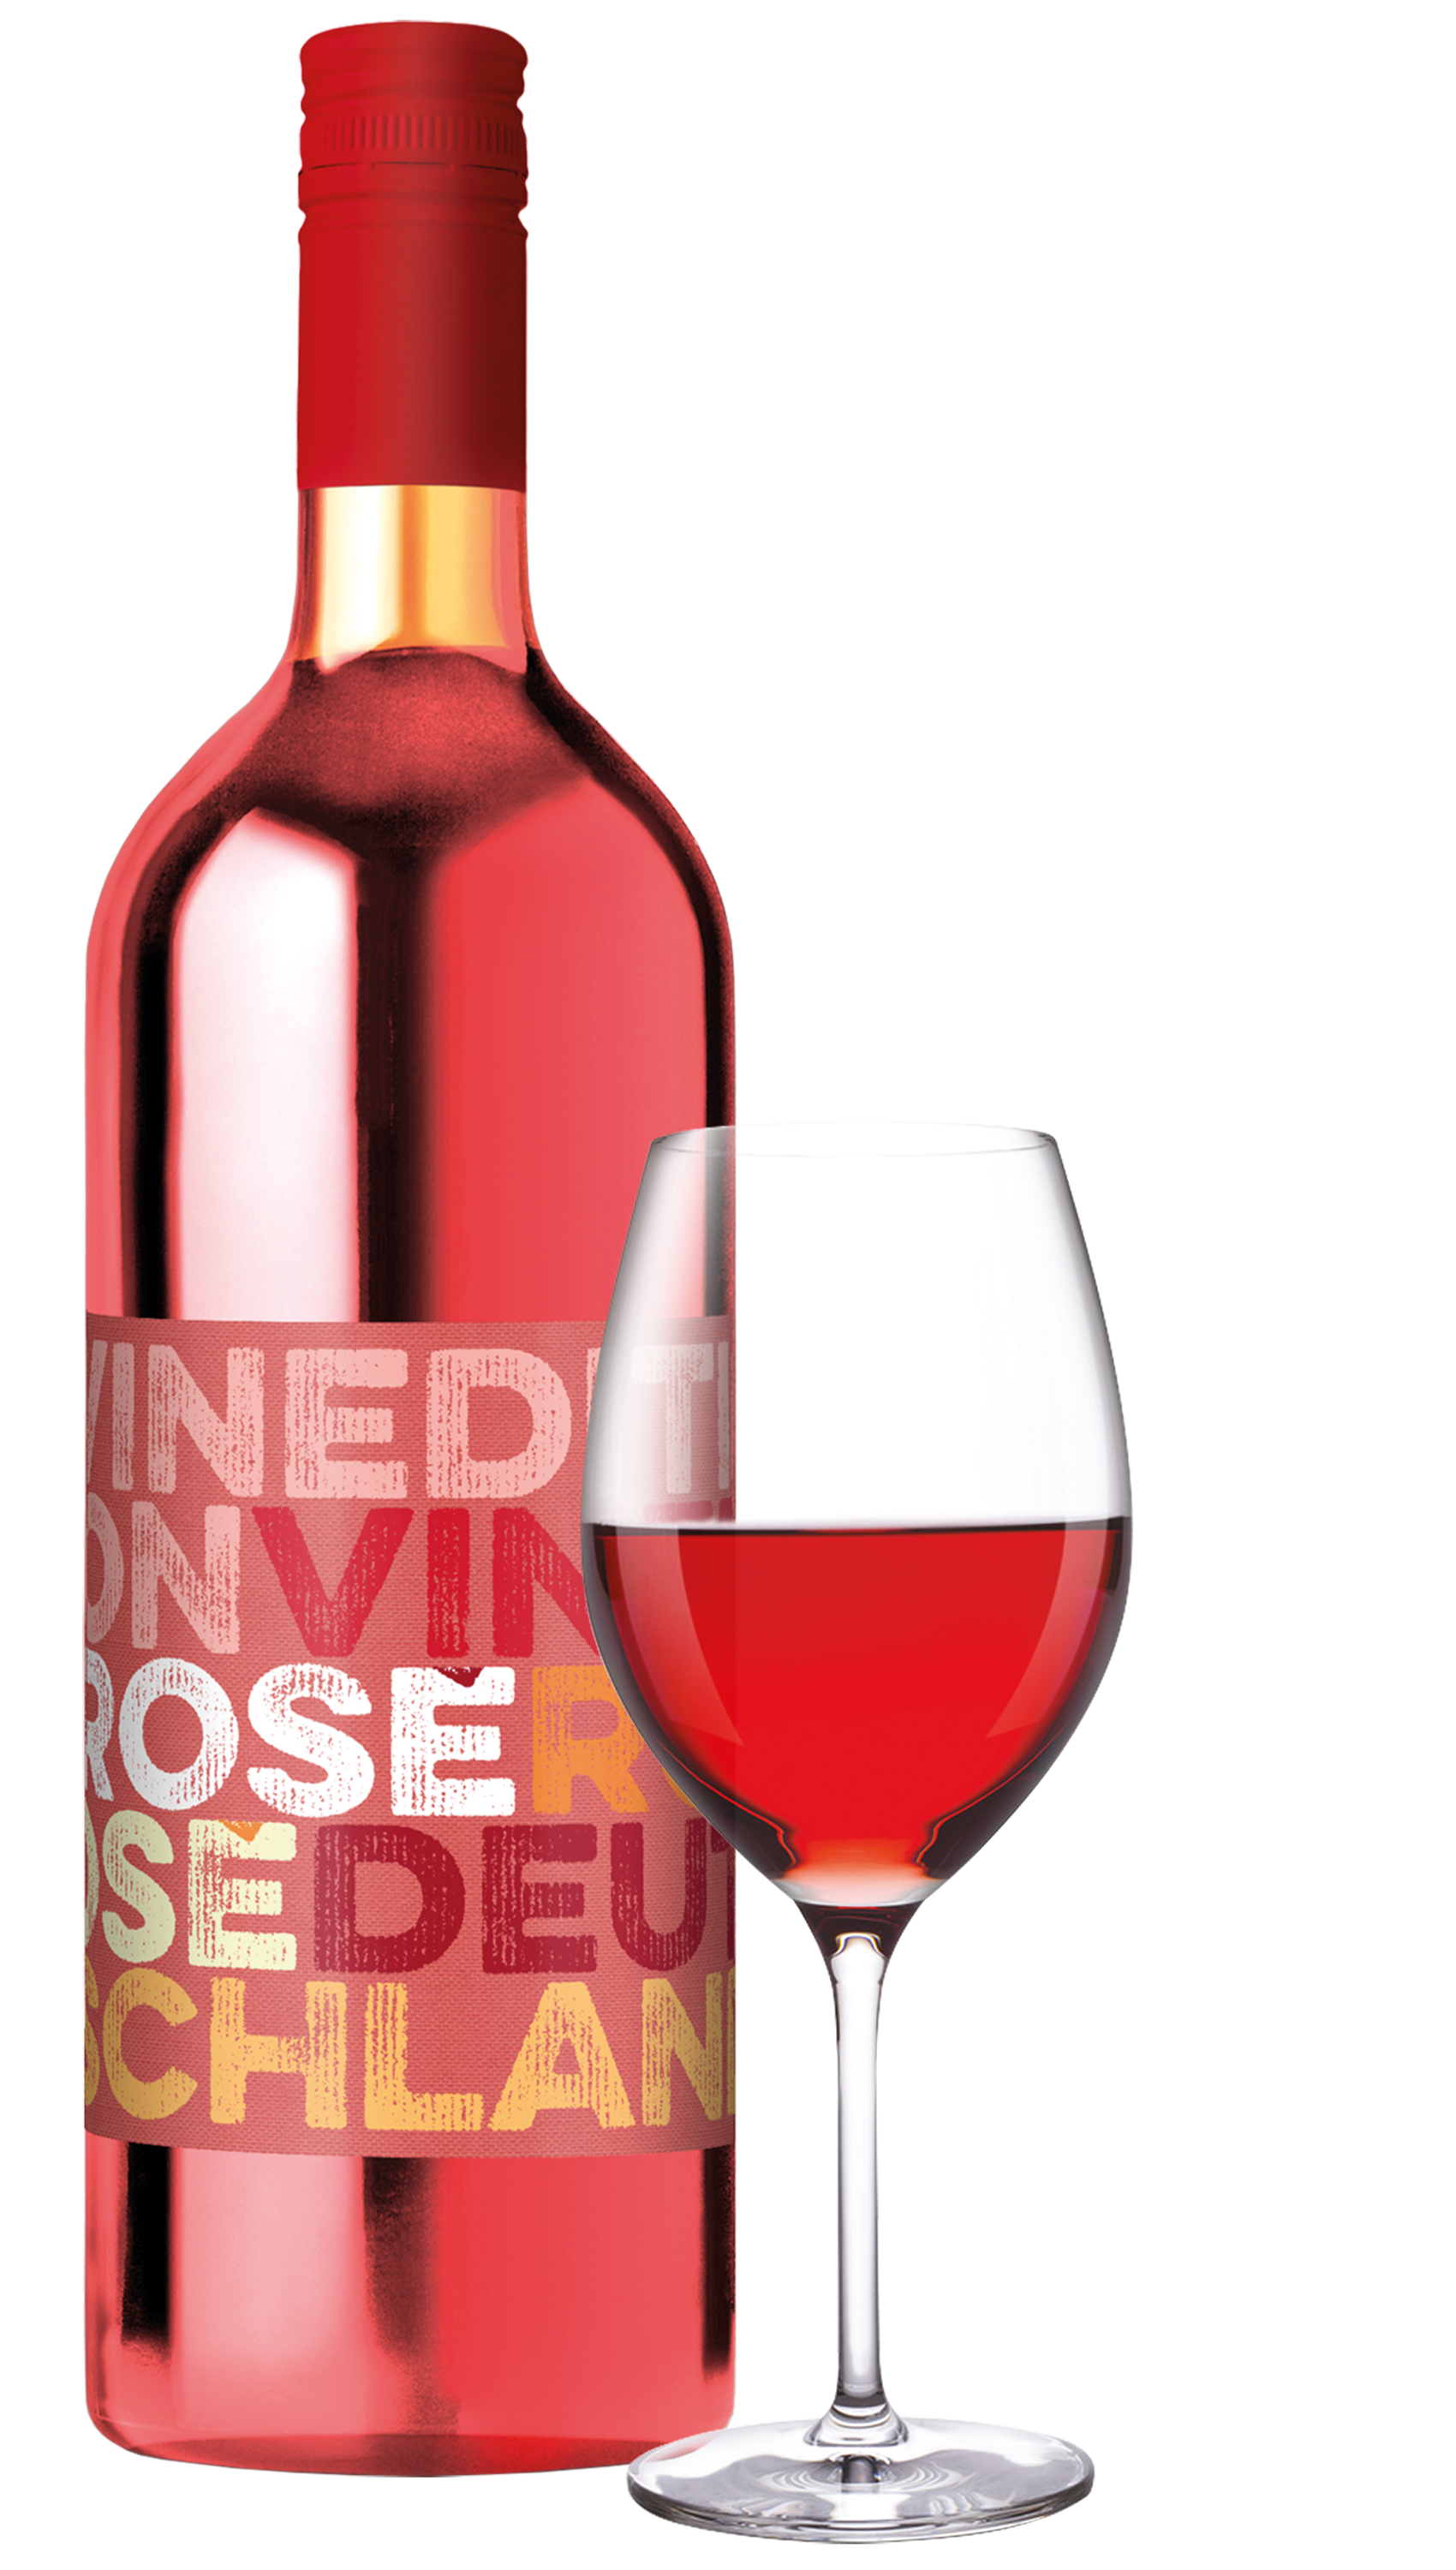 Vinedition Dornfelder Rosé halbtrocken 